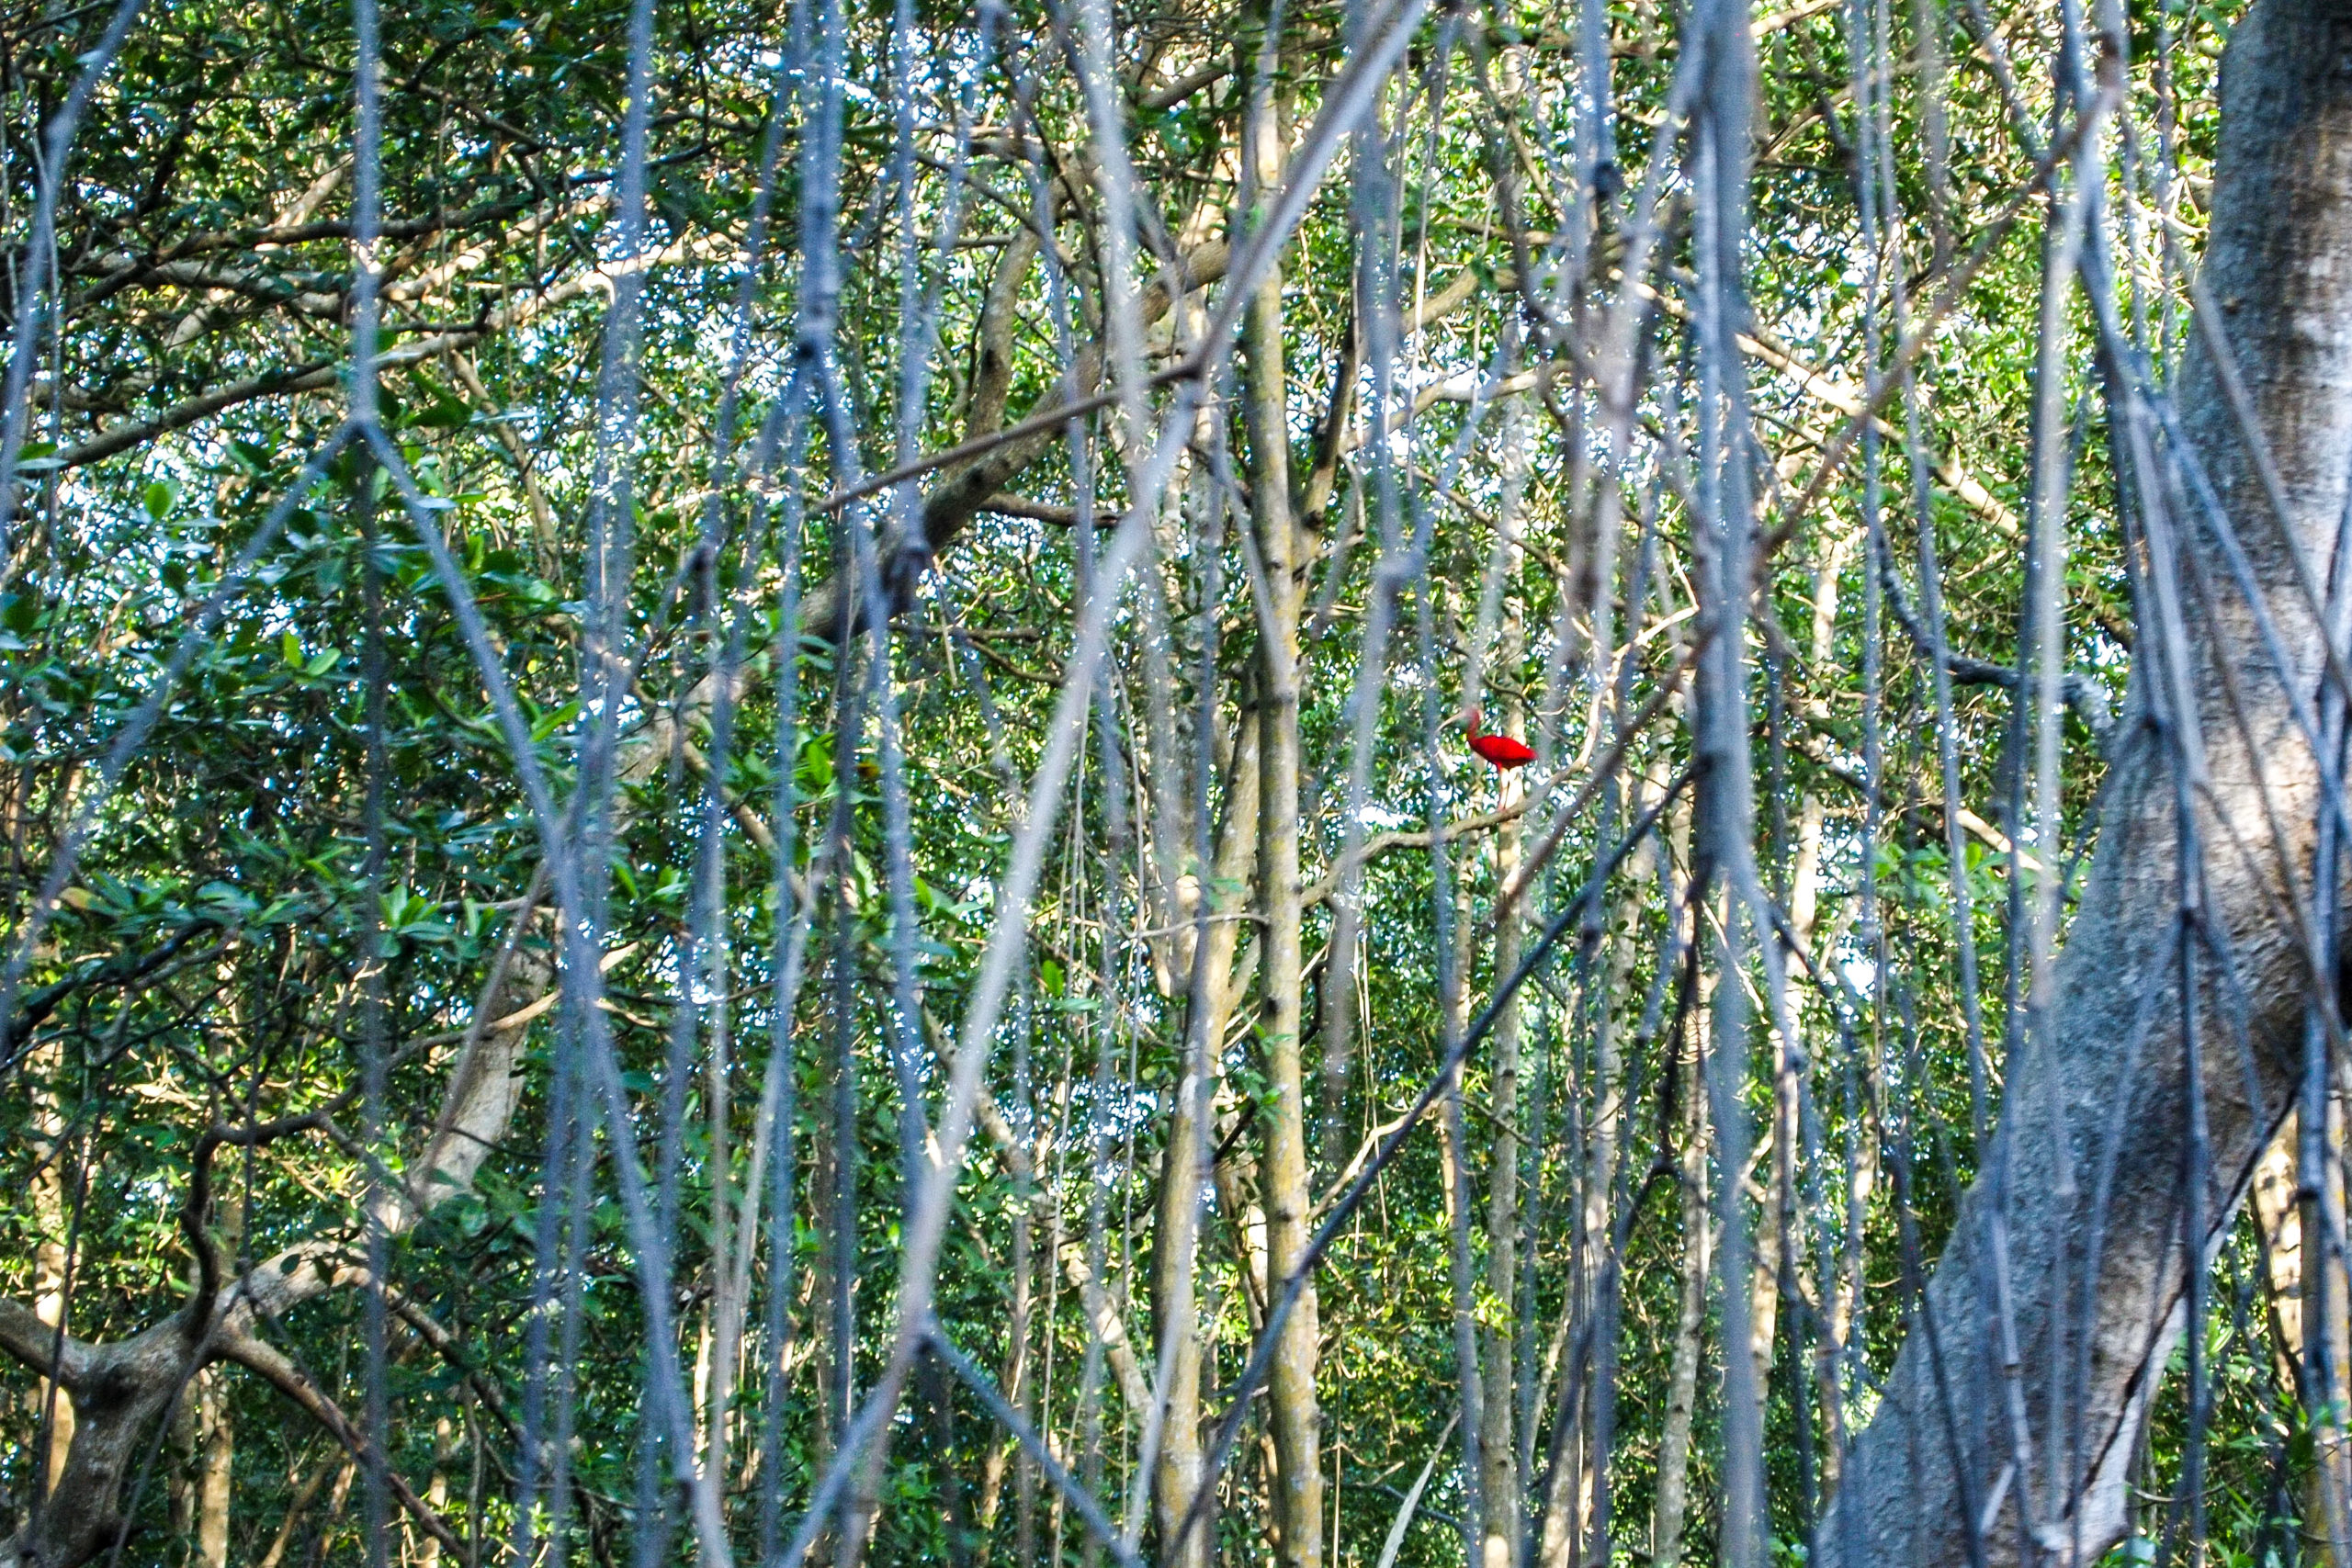 Trinidad Scarlet Ibis